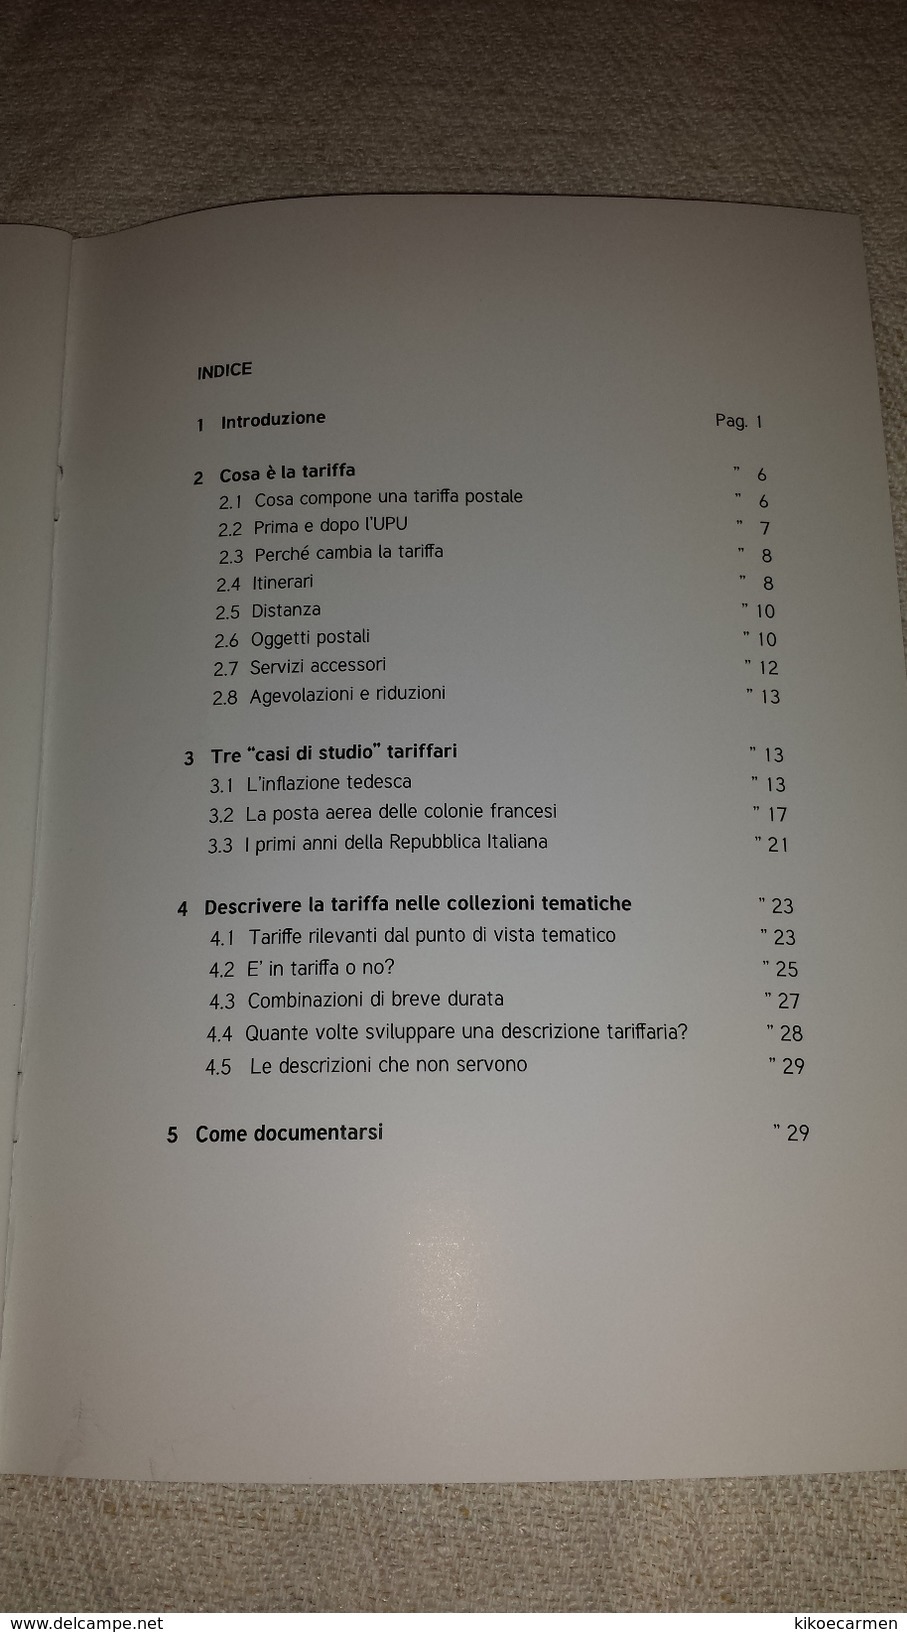 TARIFFE POSTALI IN FILATELIA TEMATICA Guglielminetti Quaderni CIFT, Book 36 Pages In 19 Black/white Photocopies Thematic - Topics